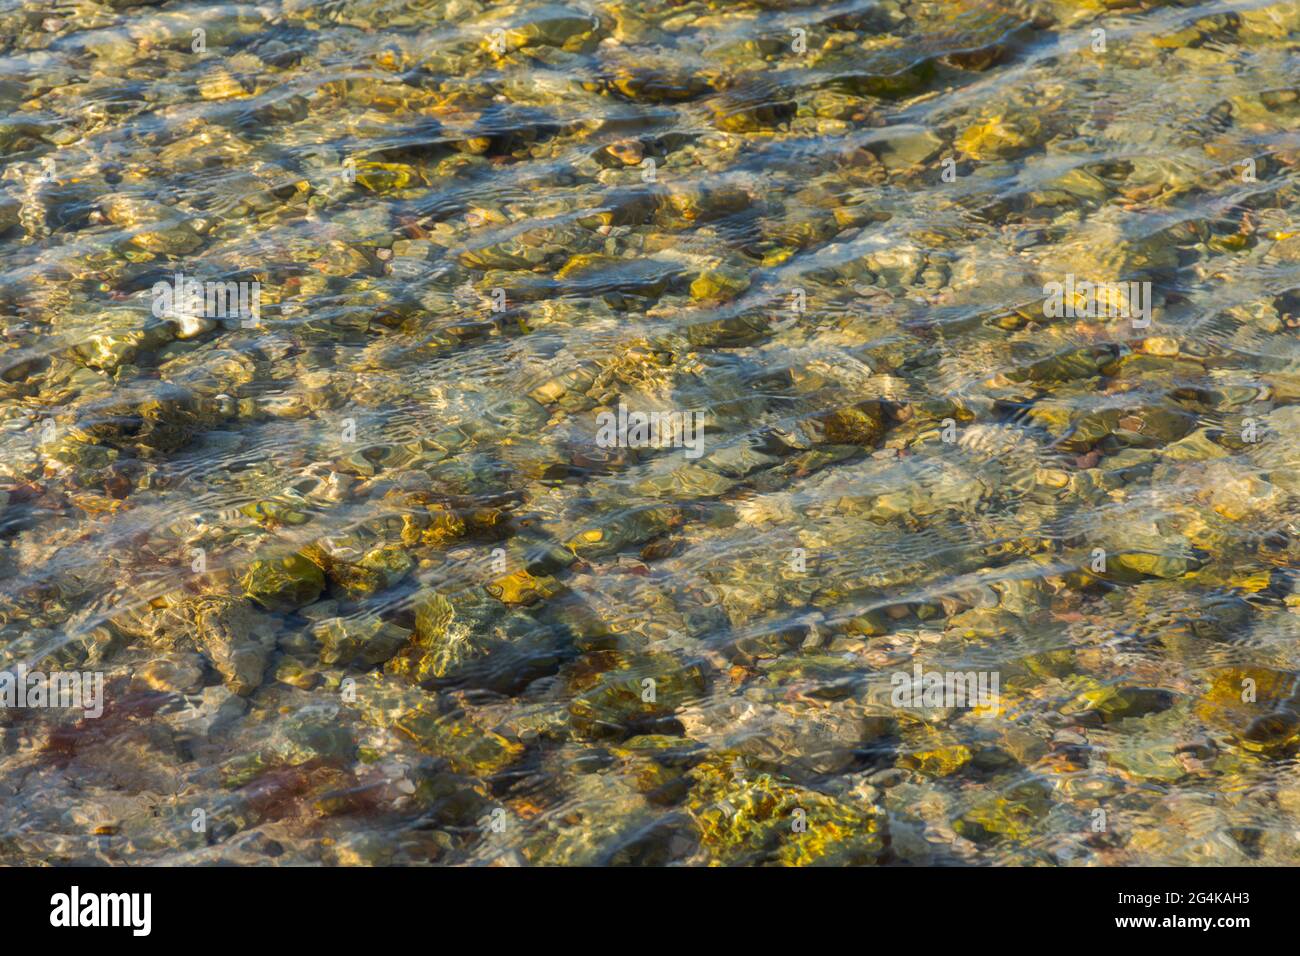 Meeressteine im klaren Meerwasser. Strukturierter abstrakter Hintergrund in neutralen Beigetönen. Schöne Wellen auf dem Wasser schimmern im Sonnenlicht. Natürliche s Stockfoto